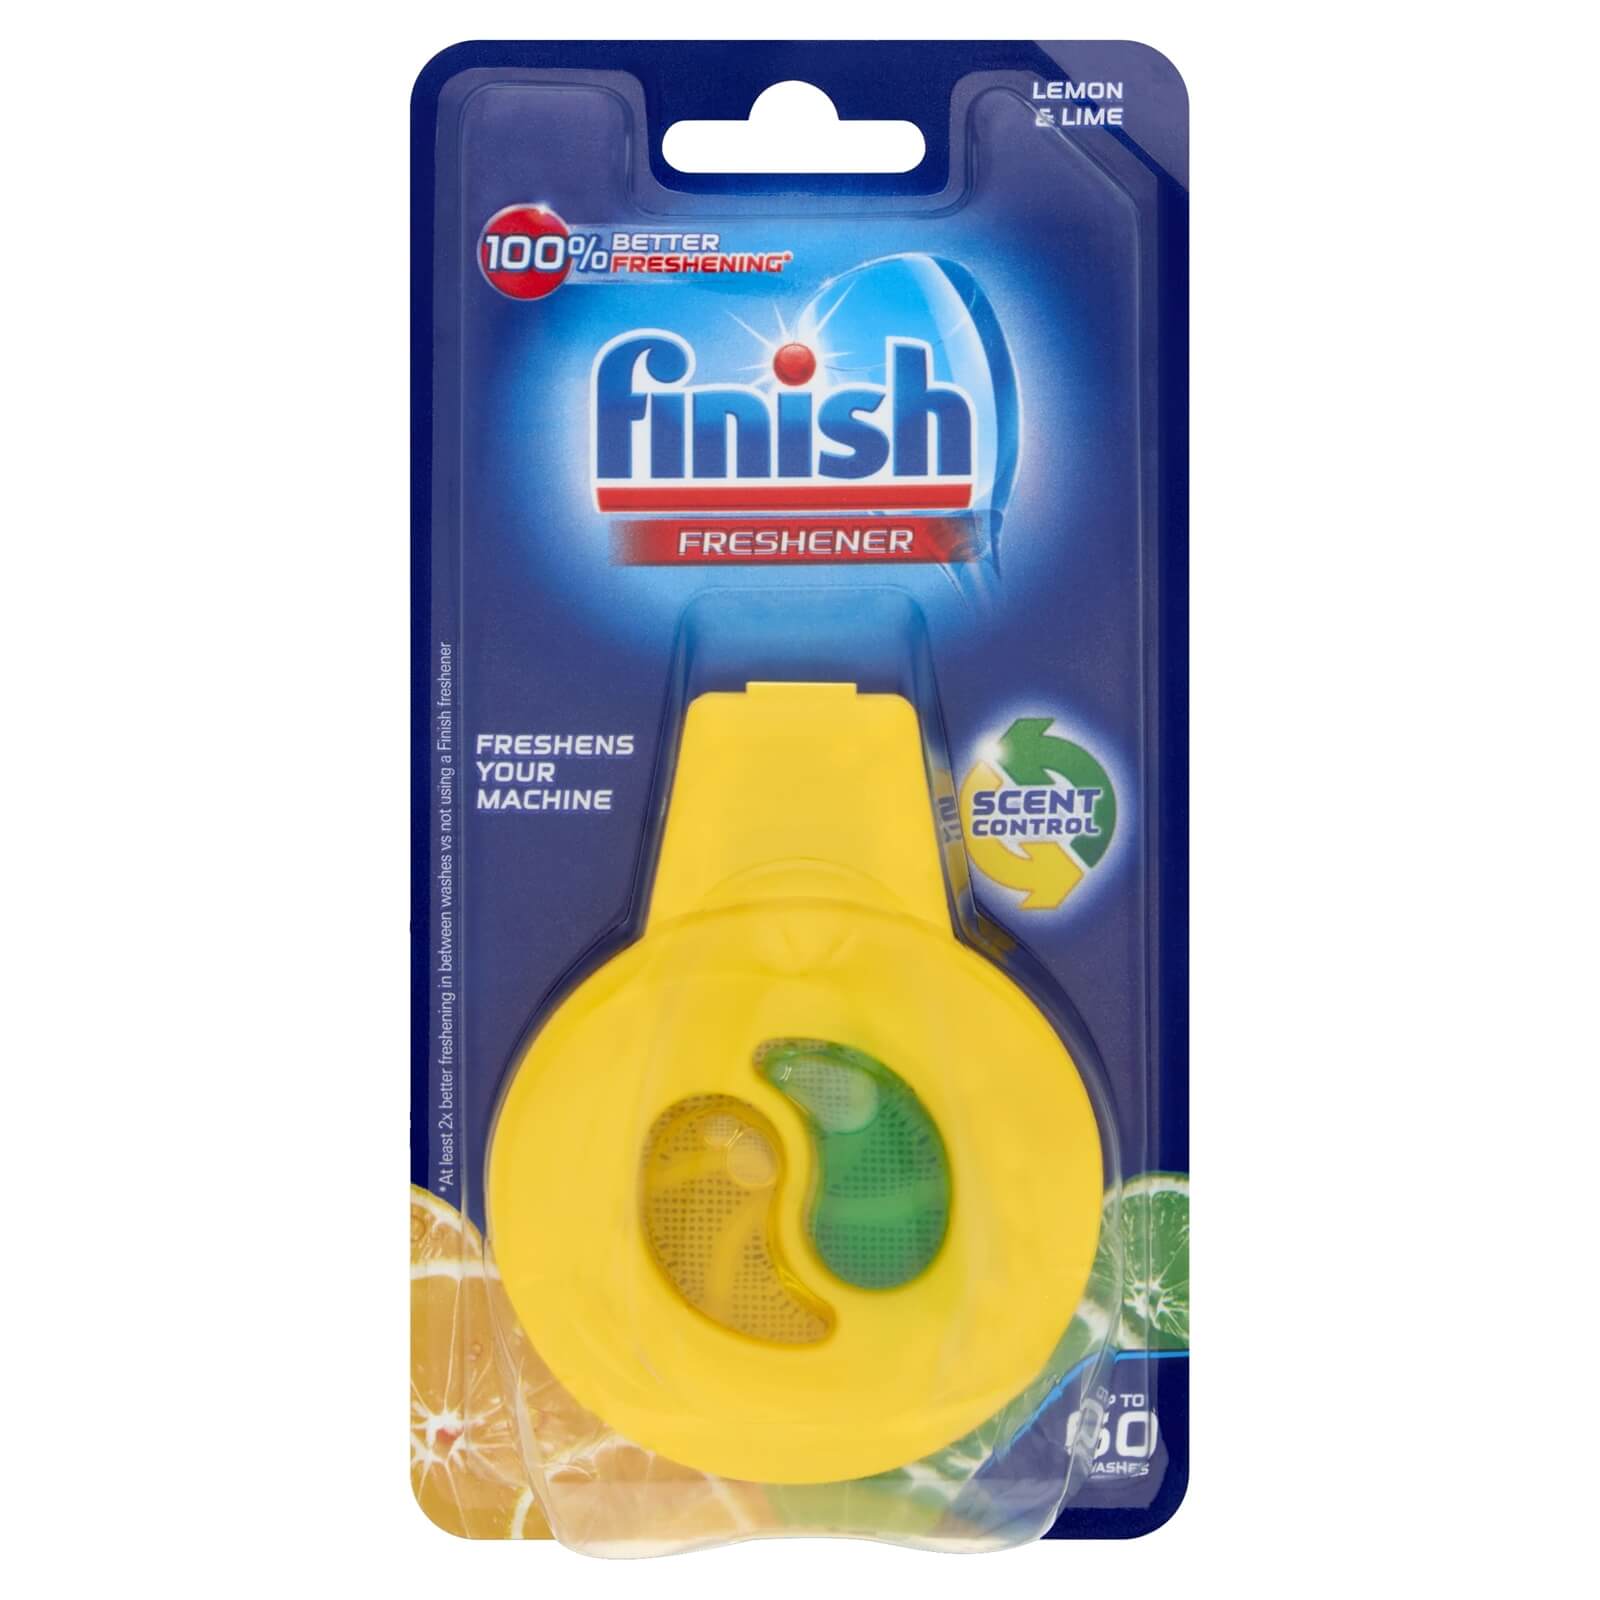 Finish Dishwasher Freshener - Lemon